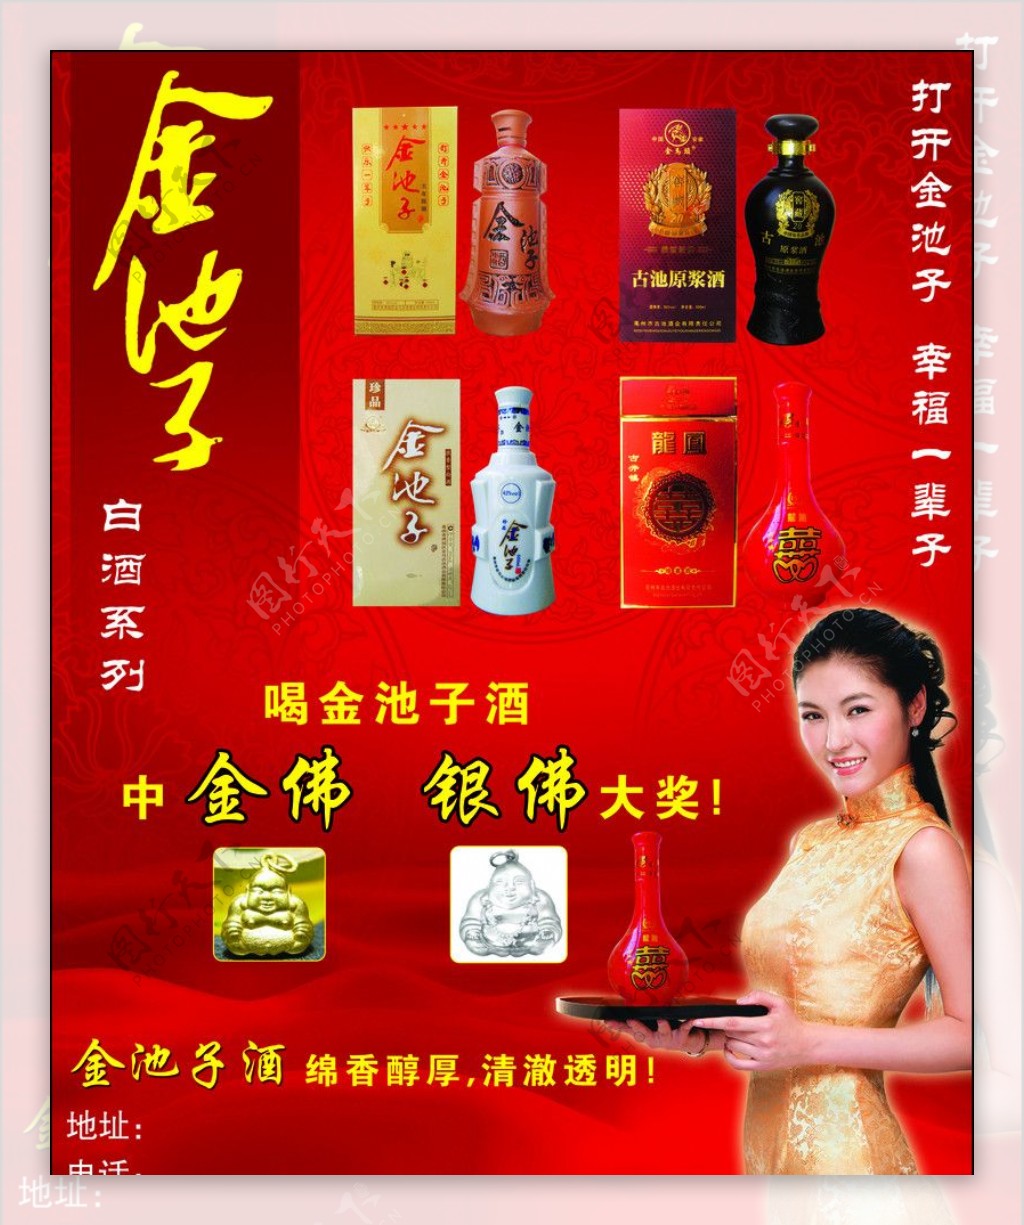 金池子酒业DM宣传广告图片